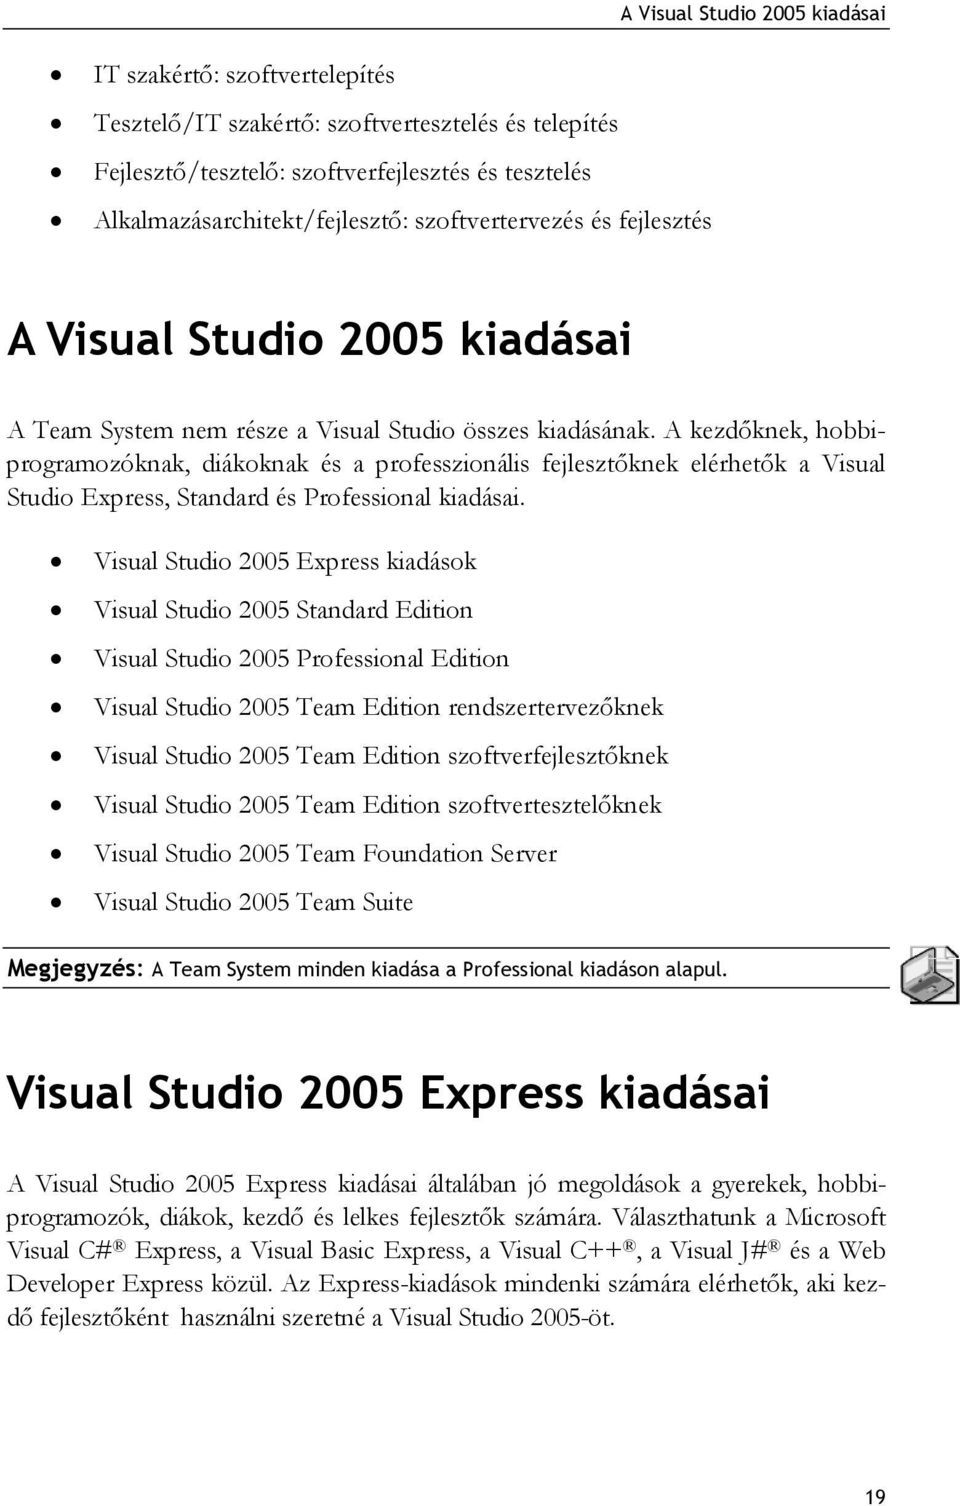 A kezdőknek, hobbiprogramozóknak, diákoknak és a professzionális fejlesztőknek elérhetők a Visual Studio Express, Standard és Professional kiadásai.